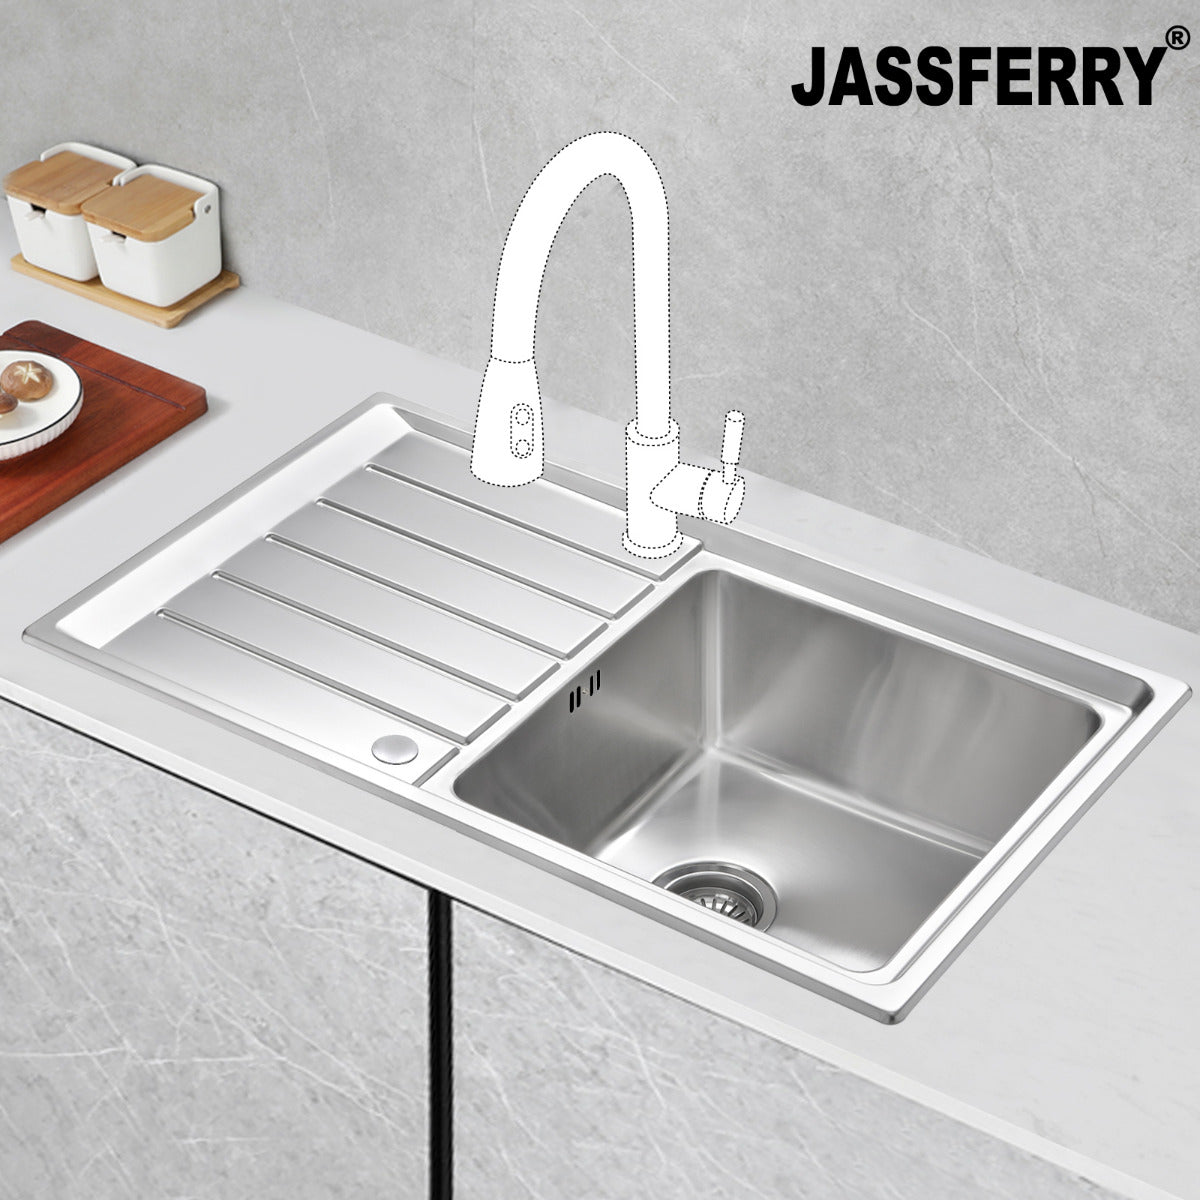 JassferryJASSFERRY Welding Stainless Steel Kitchen Sink Single 1 Bowl Reversible DrainerKitchen Sinks